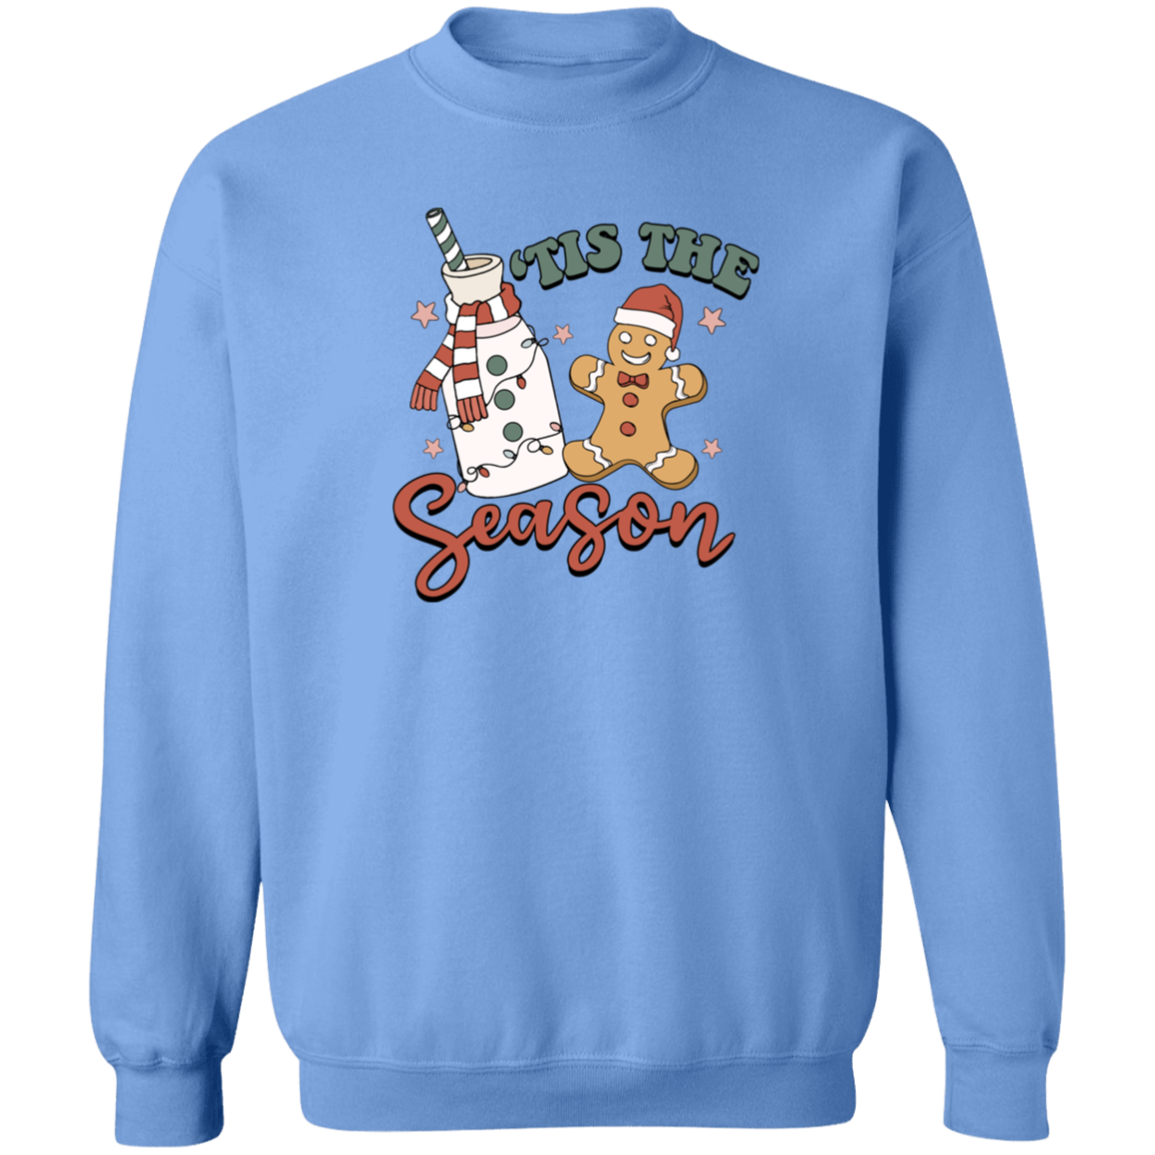 'Tis The Season Sweatshirt